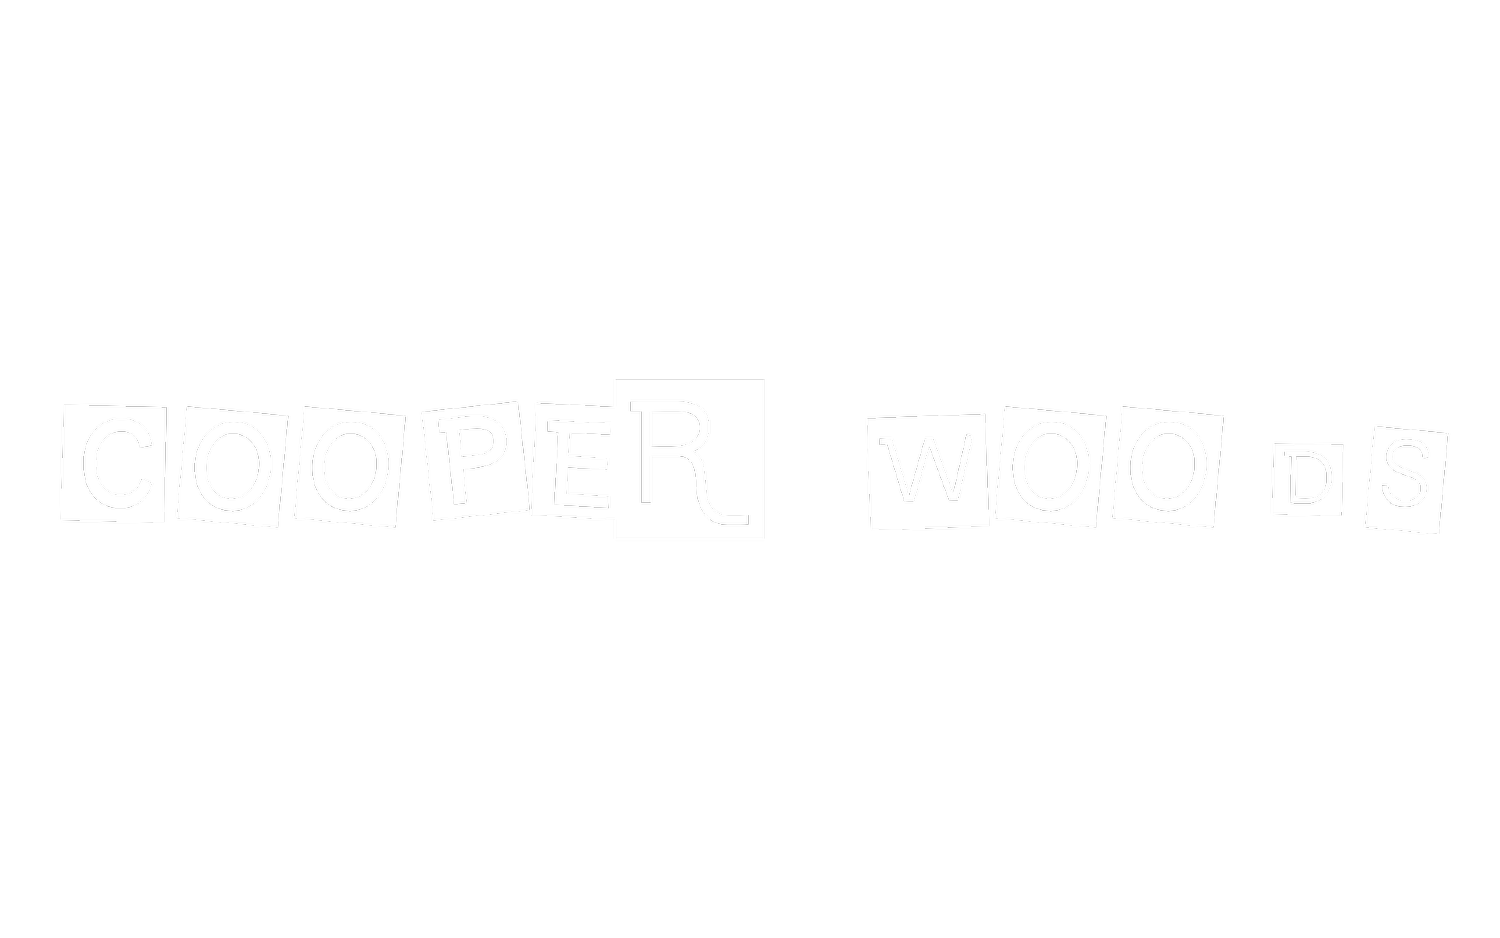 COOPER WOODS